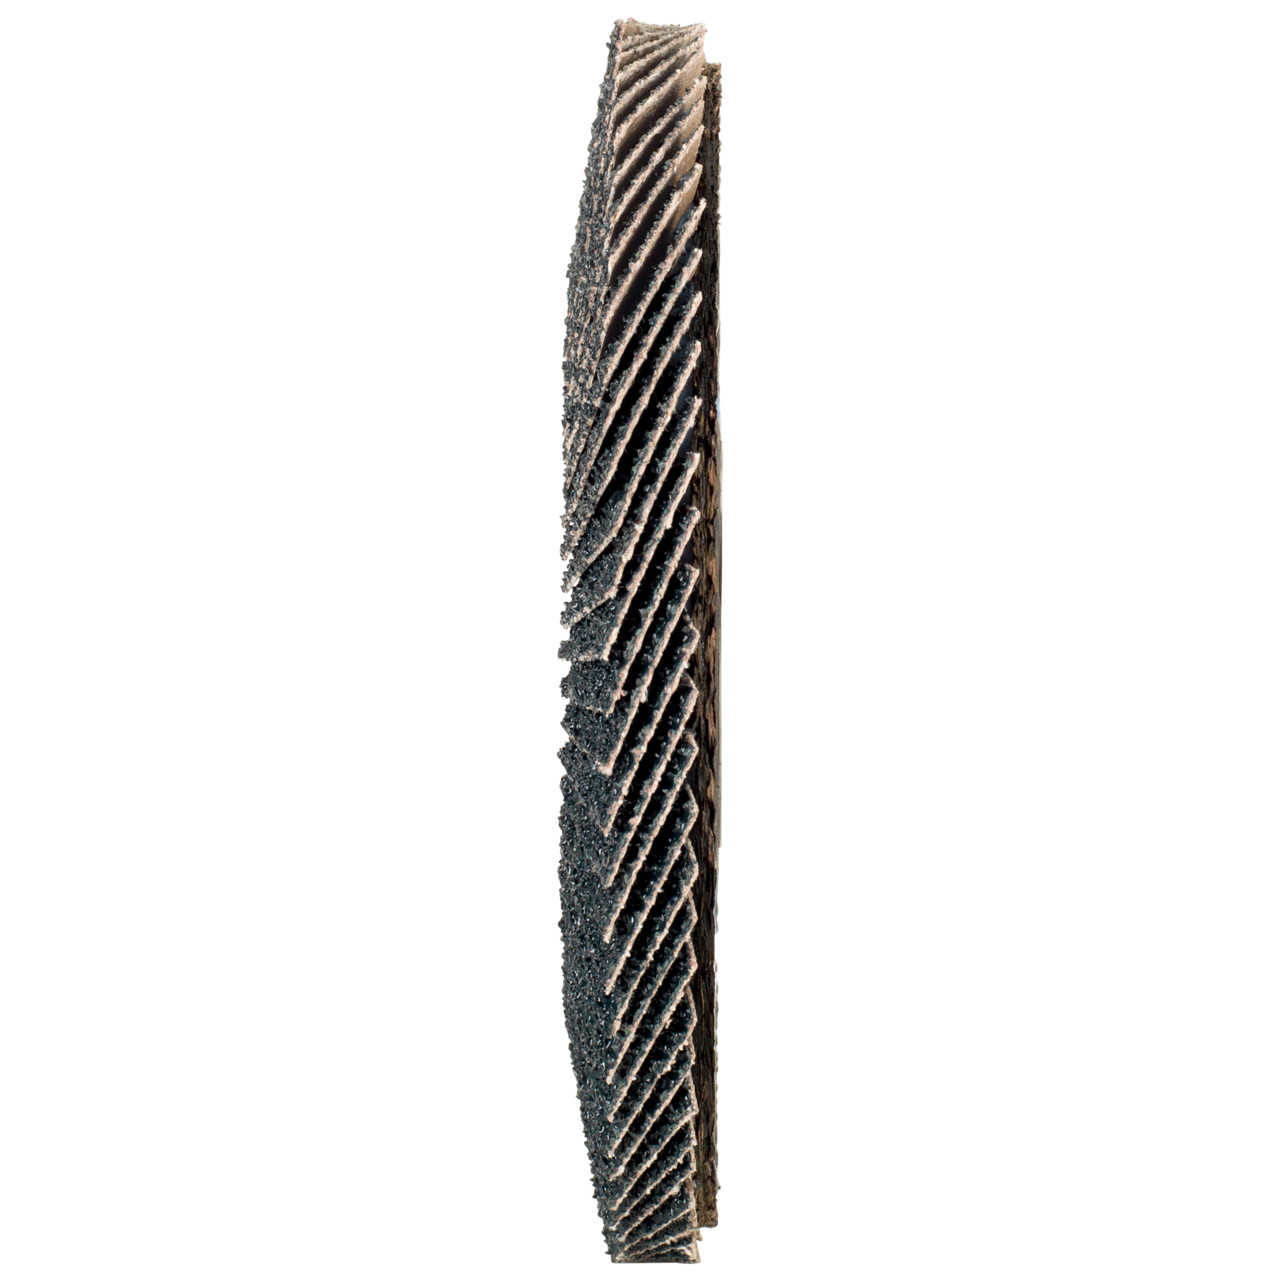 Tyrolit Arandela dentada DxH 178x22,2 2en1 para acero y acero inoxidable, P60, forma: 27A - versión con manivela (versión con cuerpo de soporte de fibra de vidrio), Art. 668672